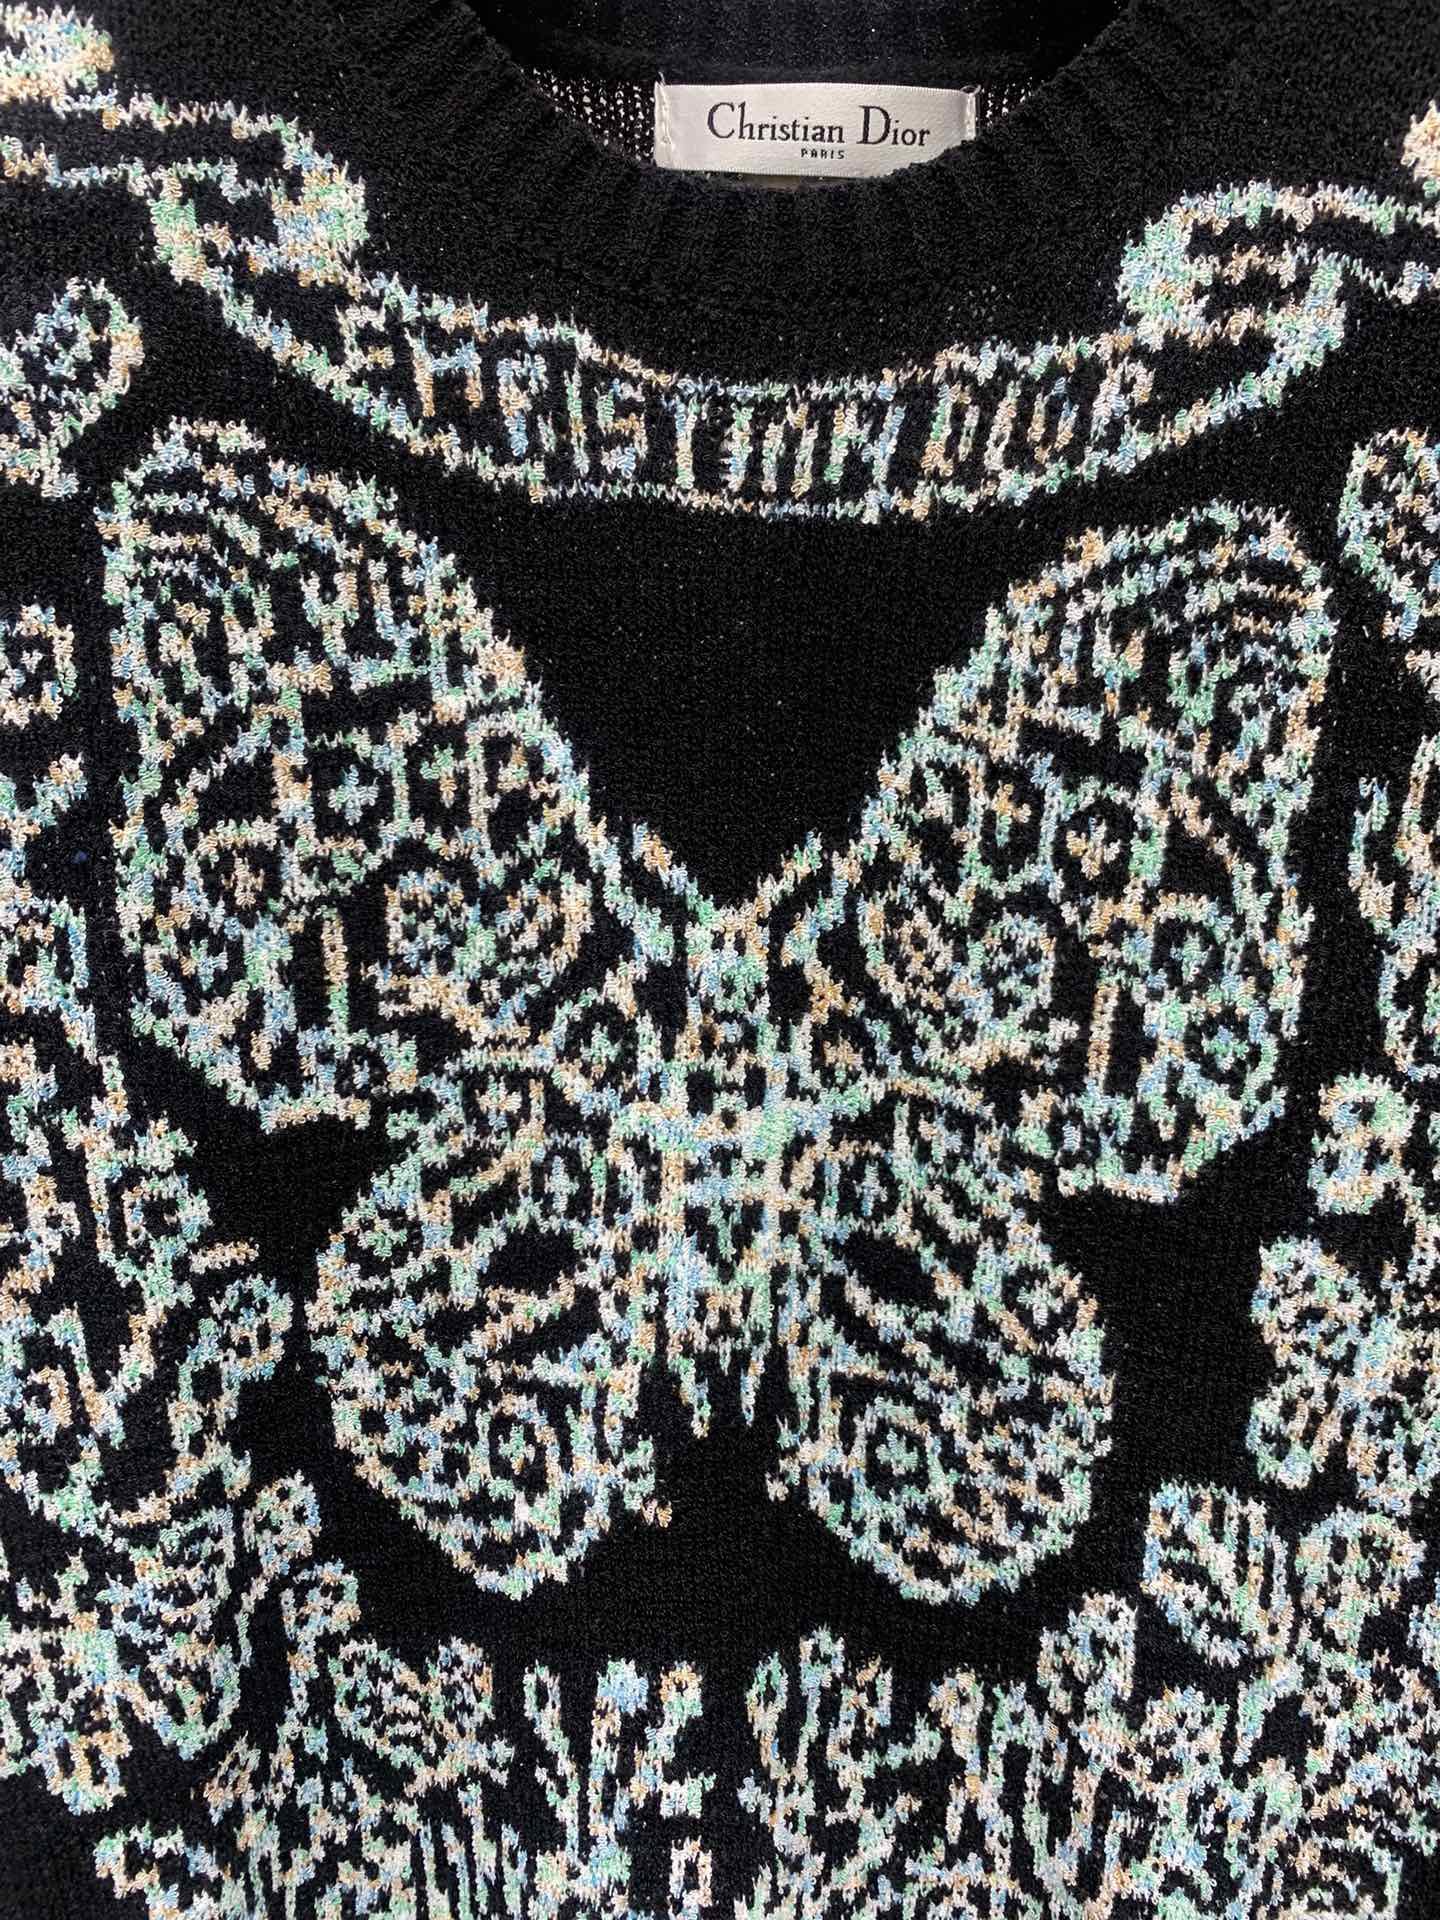 *新款蝴蝶图案针织上衣这件上衣的设计简直太精致了！大大的蝴蝶图案轻盈又可爱仿佛随时都能飞起来而且它的颜色